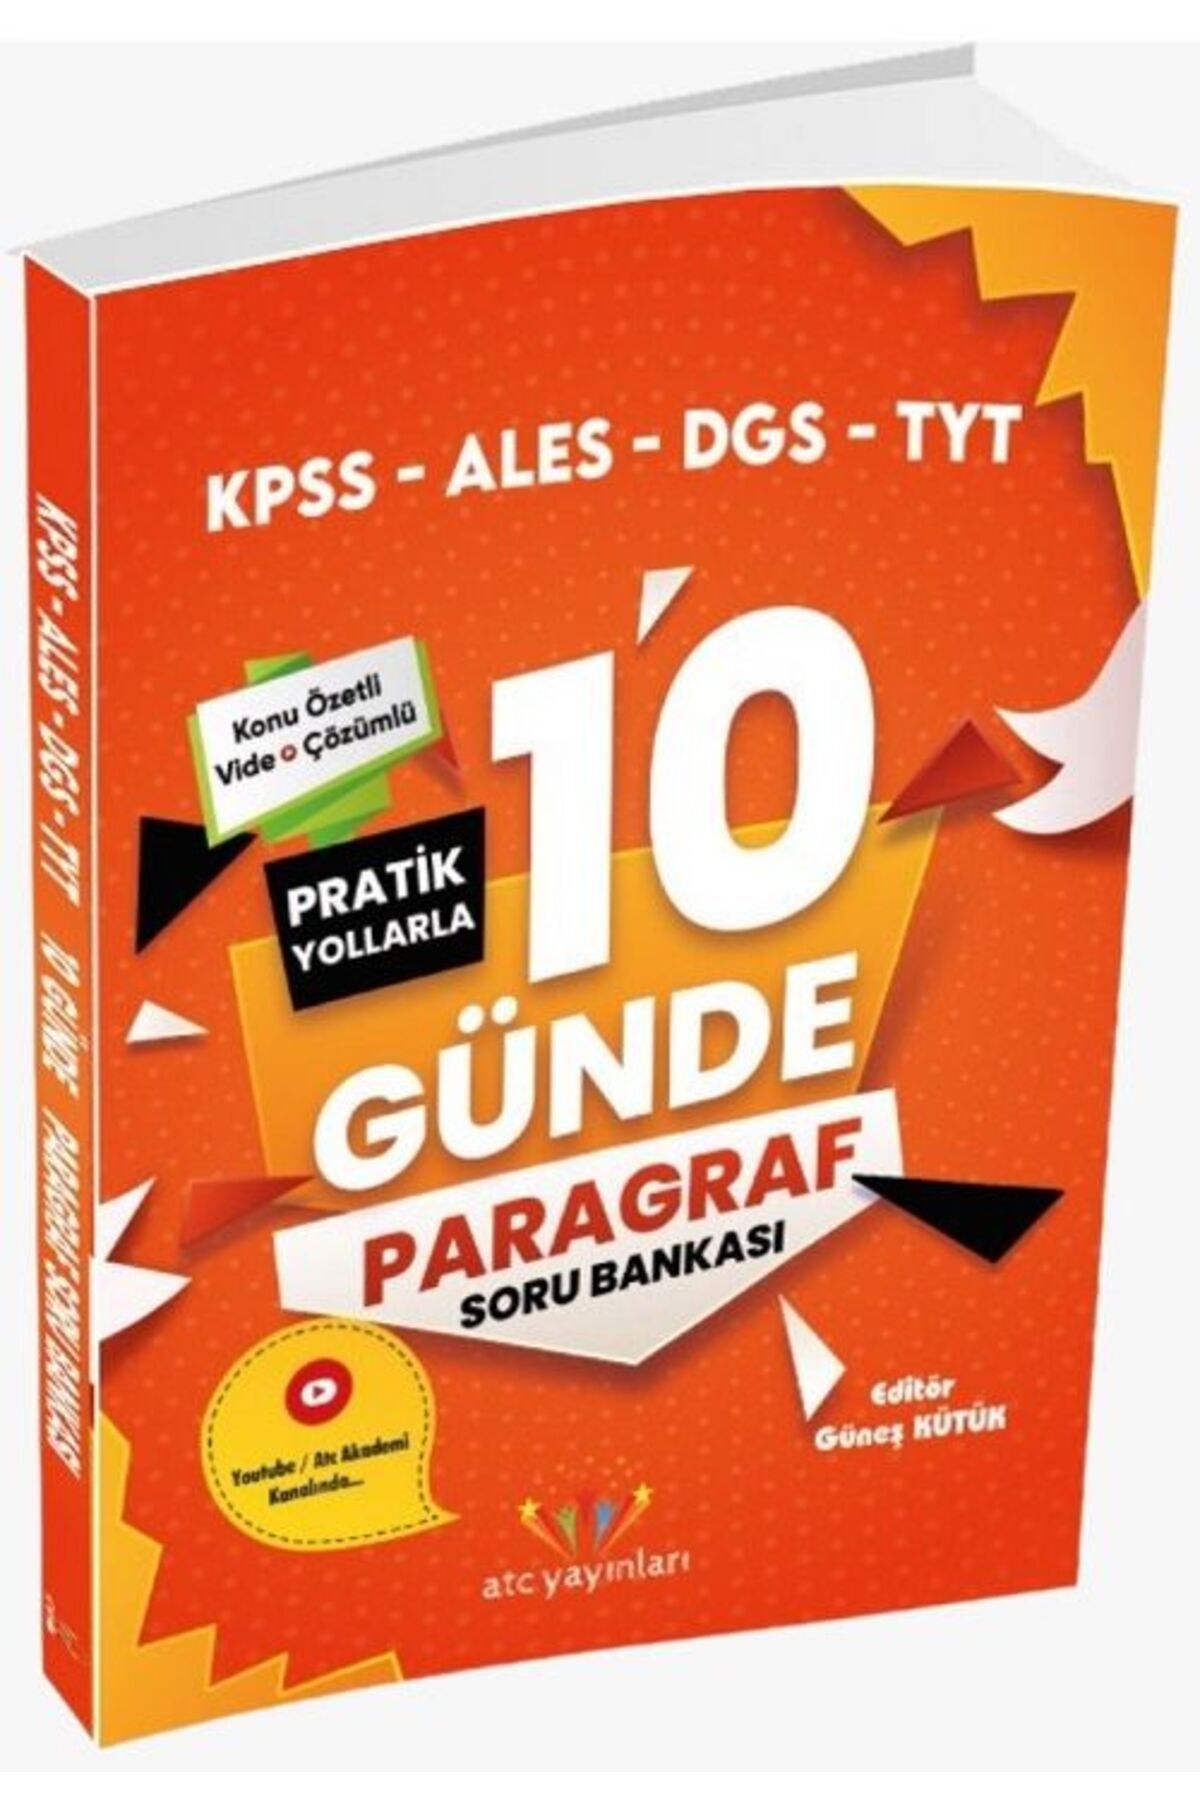 ATC Yayınları Kpss Ales Dgs Tyt 10 Günde Paragraf Soru Bankası Video Çözümlü